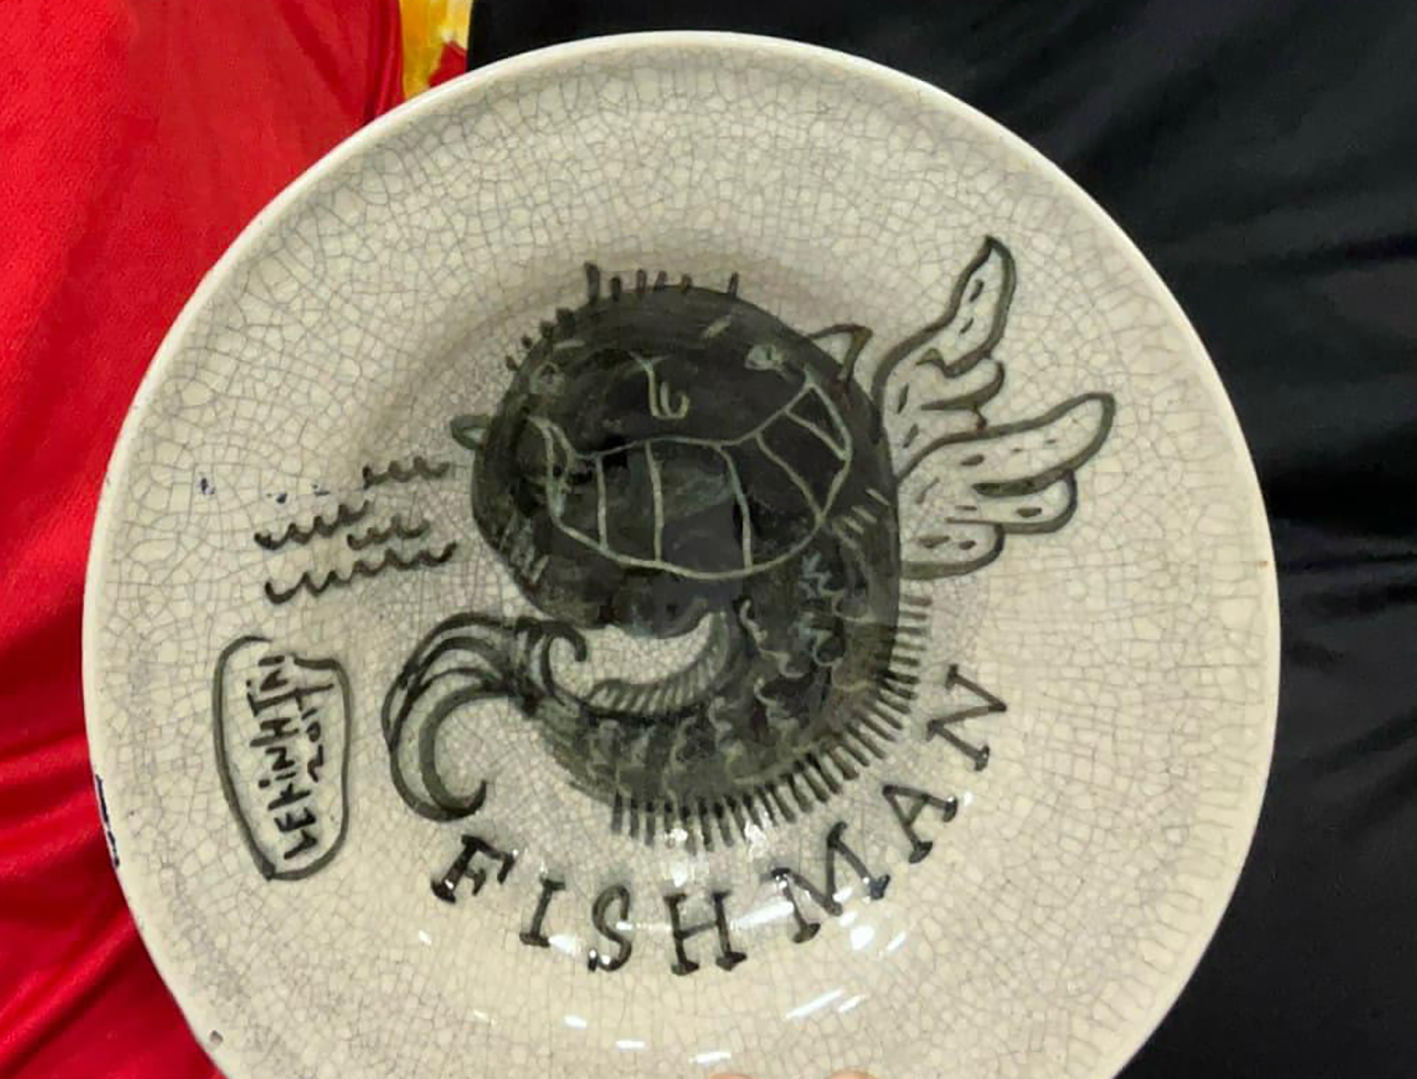 họa sĩ Lê Kinh Tài mang đến tác phẩm vẽ trên đĩa gốm mang tên Fishman. 